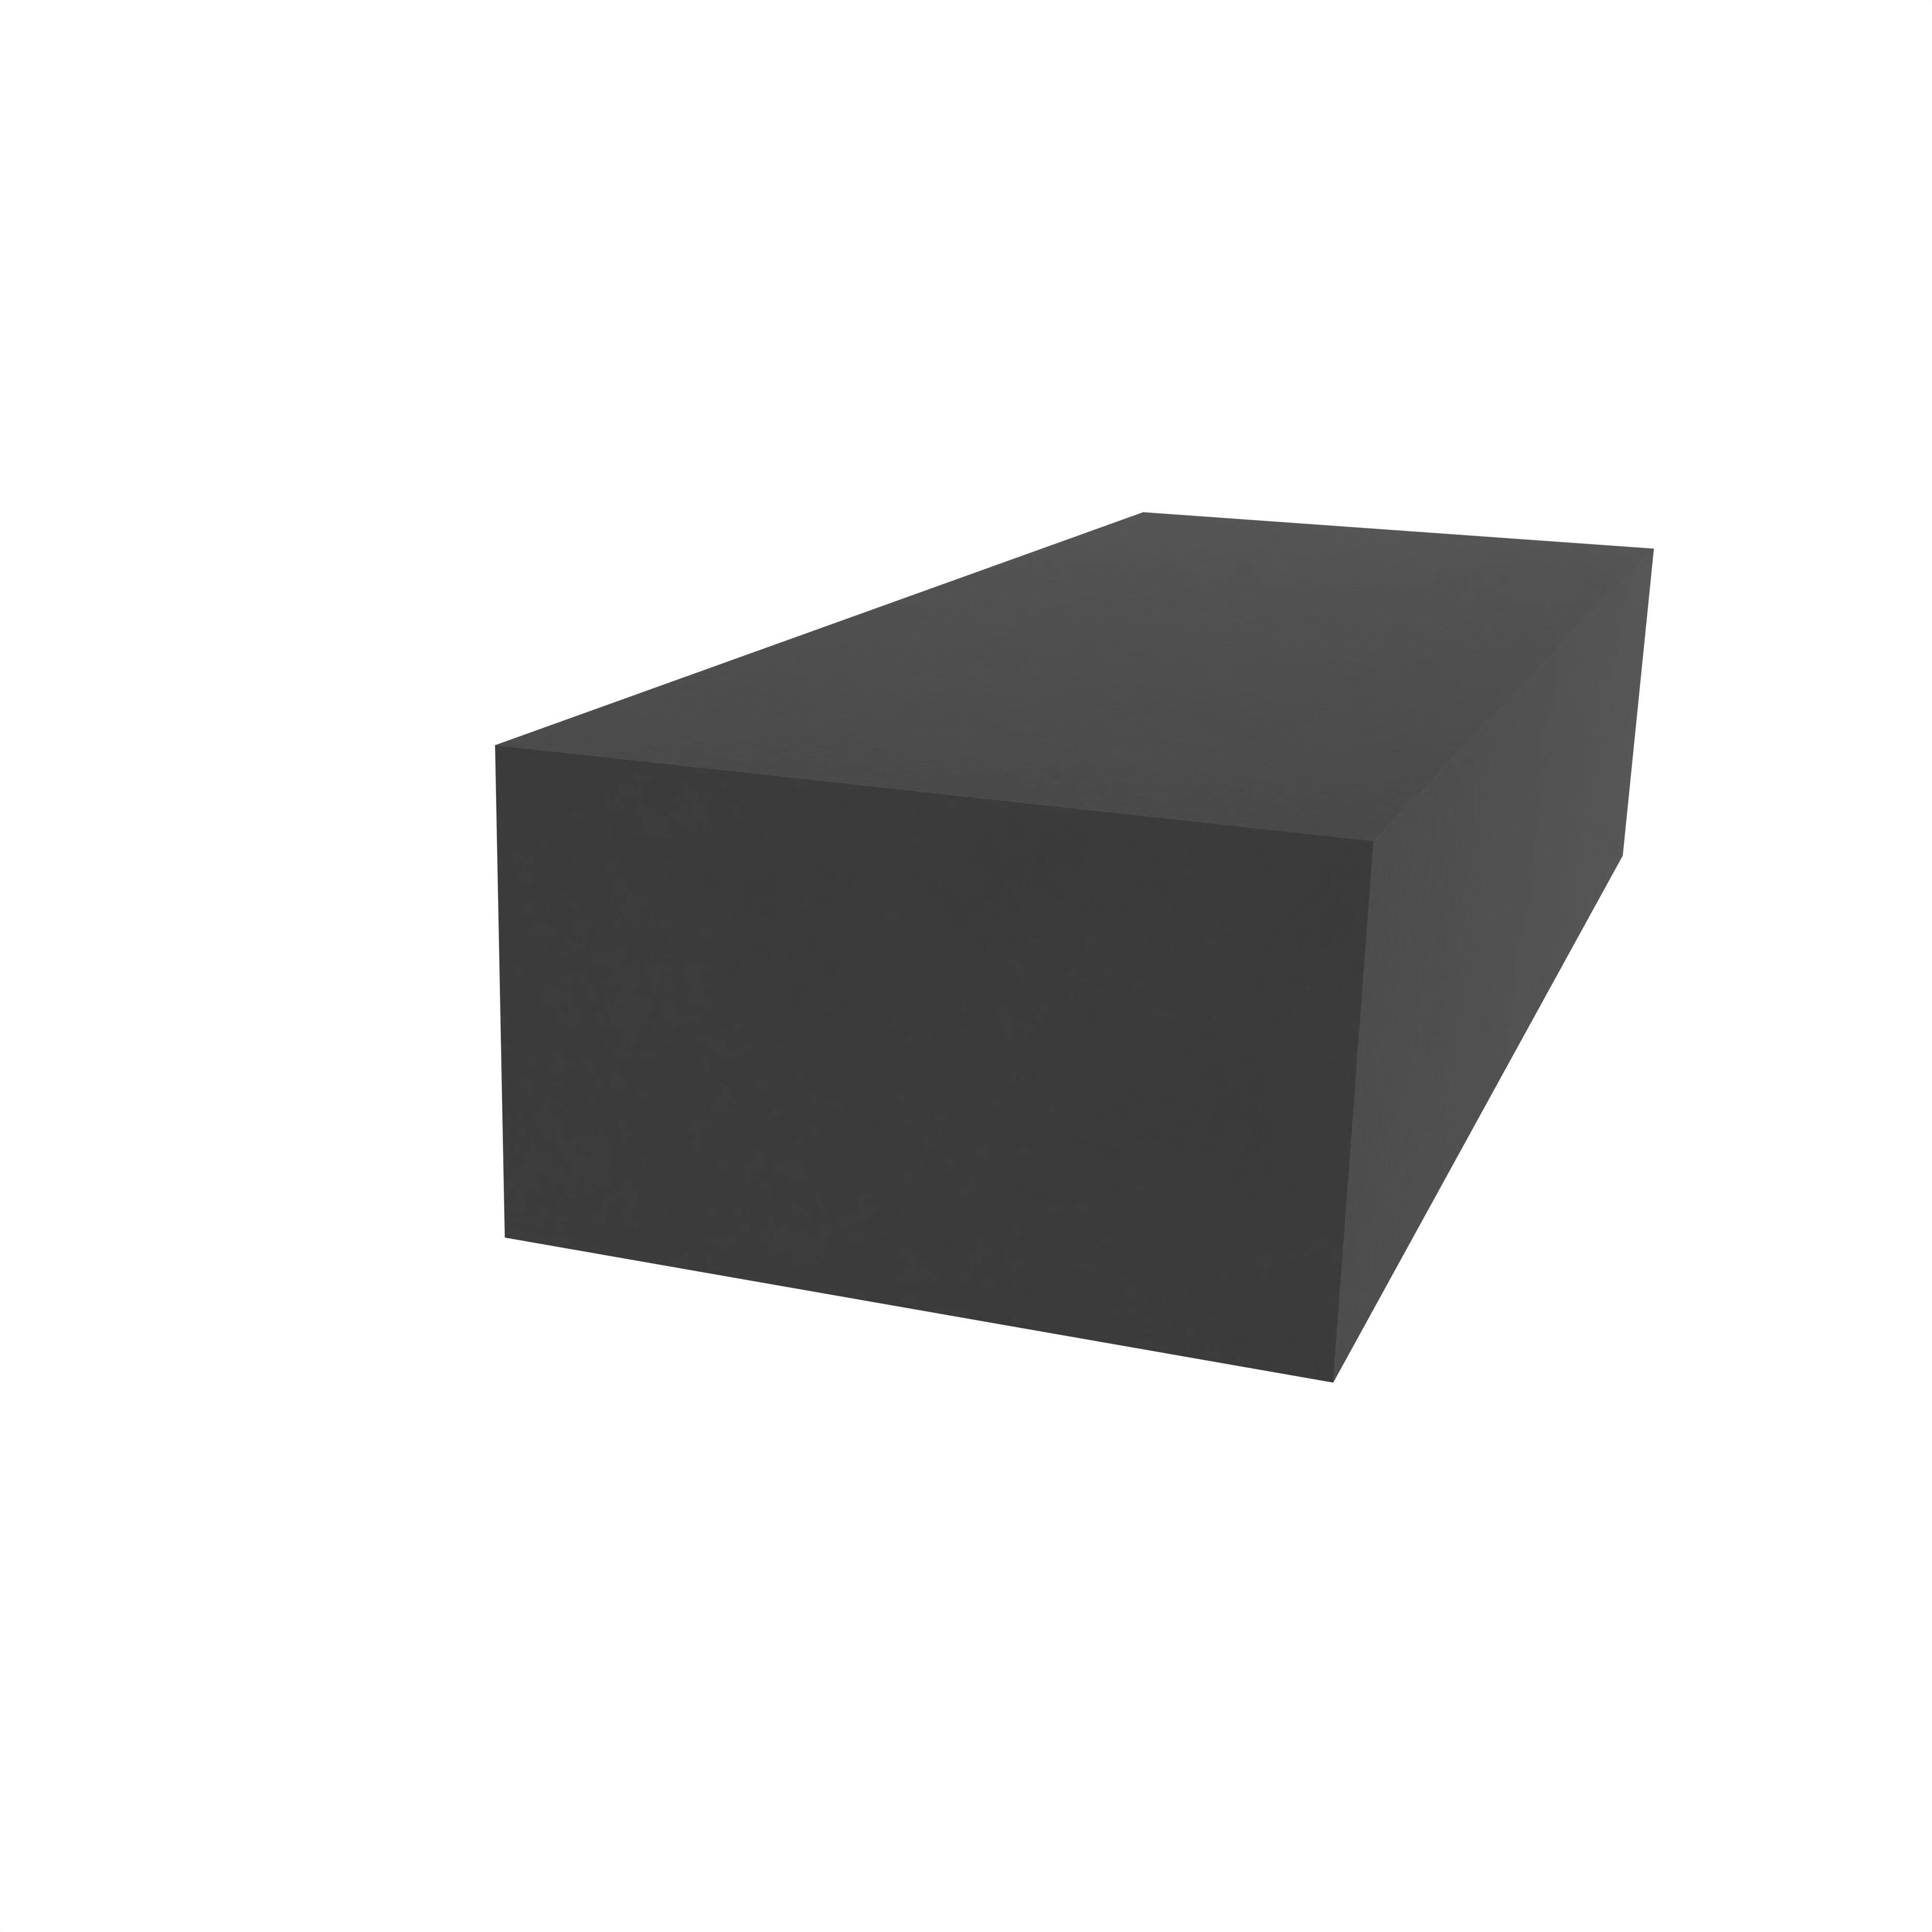 Moosgummidichtung vierkant | 5 mm Breite | Farbe: schwarz